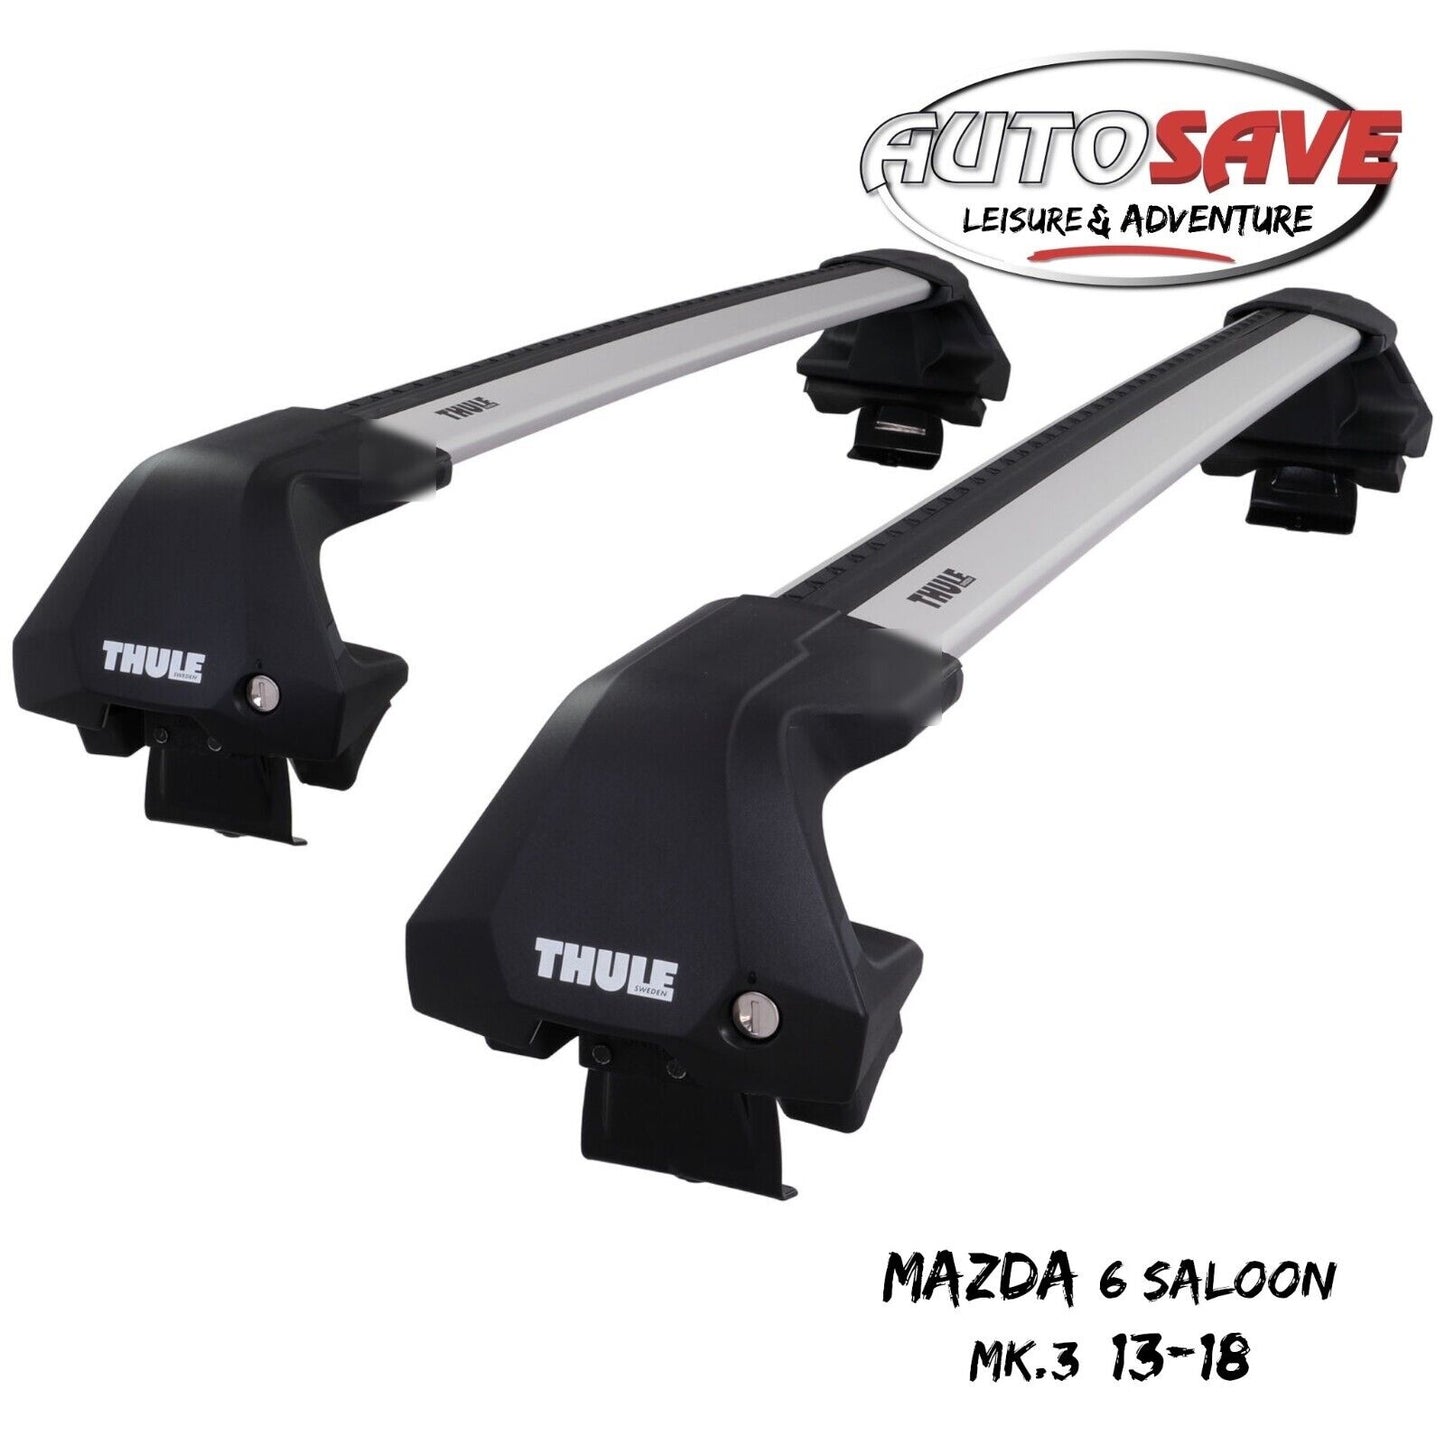 Thule WingBar Edge Silver Aluminium Roof Bars Set for Mazda 6 Saloon Mk.3 13-18